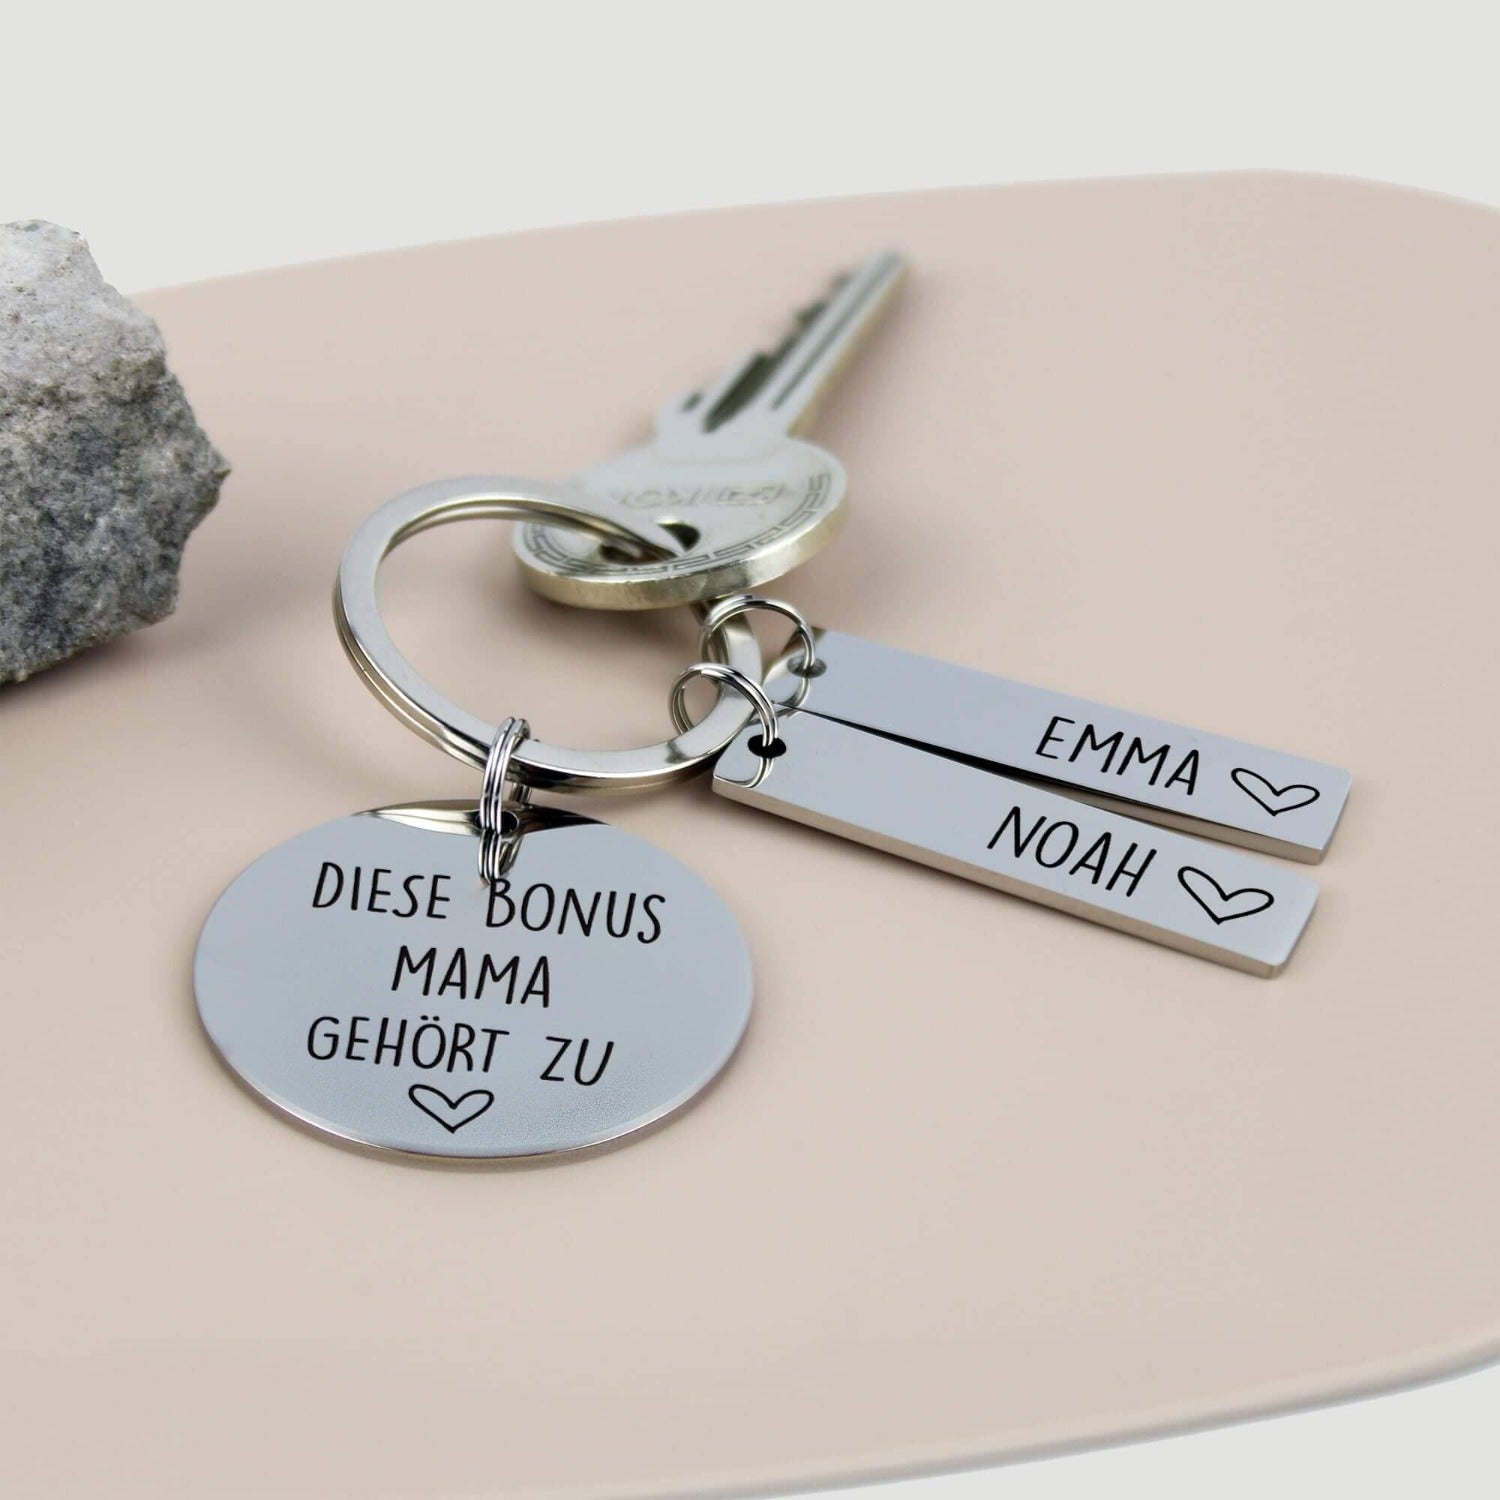 Muttertagsgeschenk: Diese Bonus Mama gehört zu... - Gravierter Edelstahl-Schlüsselanhänger mit personalisierten Namensanhängern - Create4me